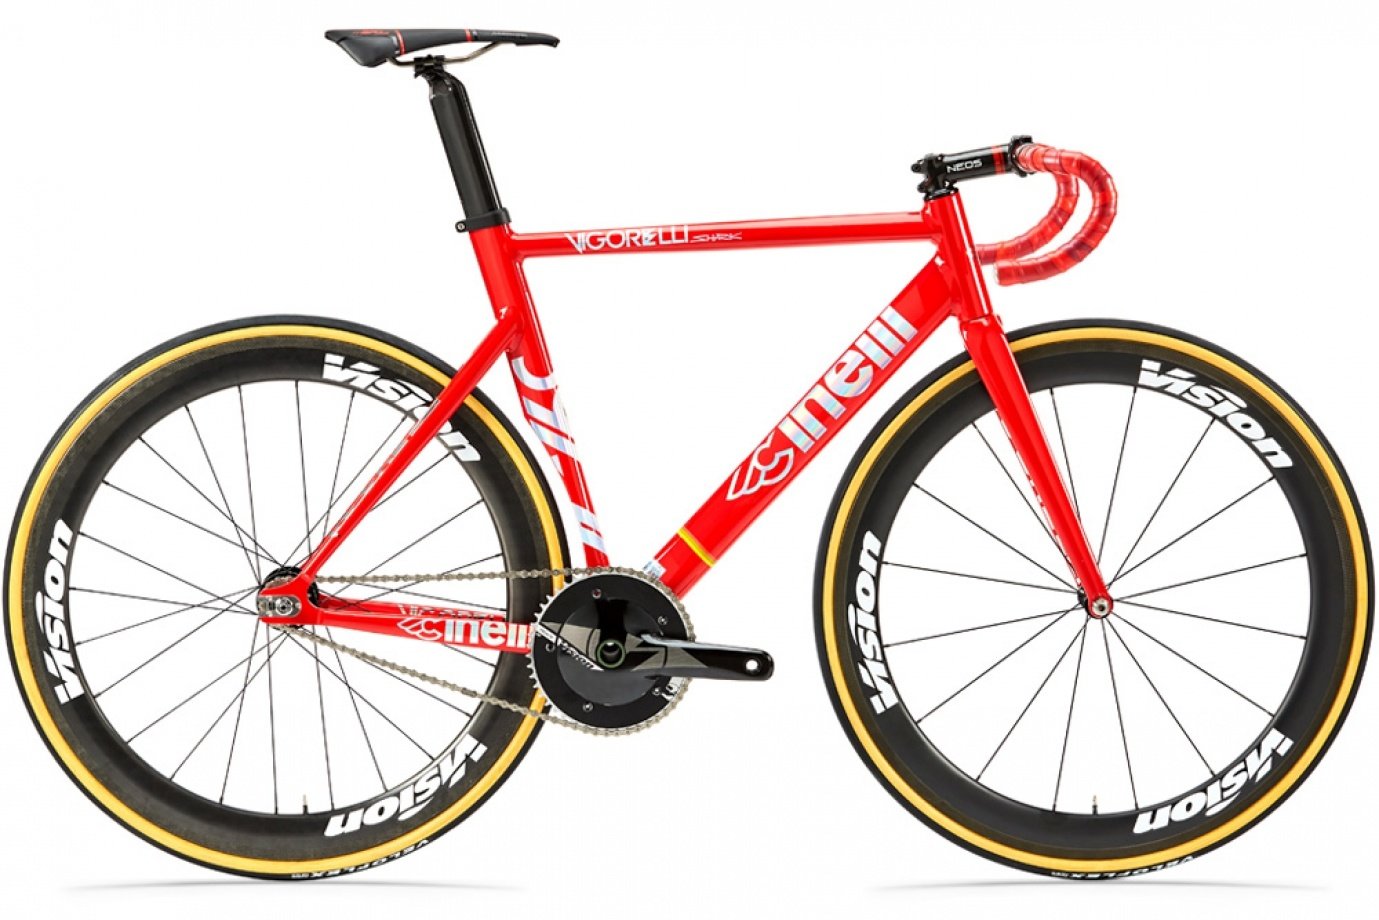 Vélo mono-vitesse de sport aérodynamique rouge de la marque Cinelli à vitesse unique, selle sport et guidon sport incurvé.